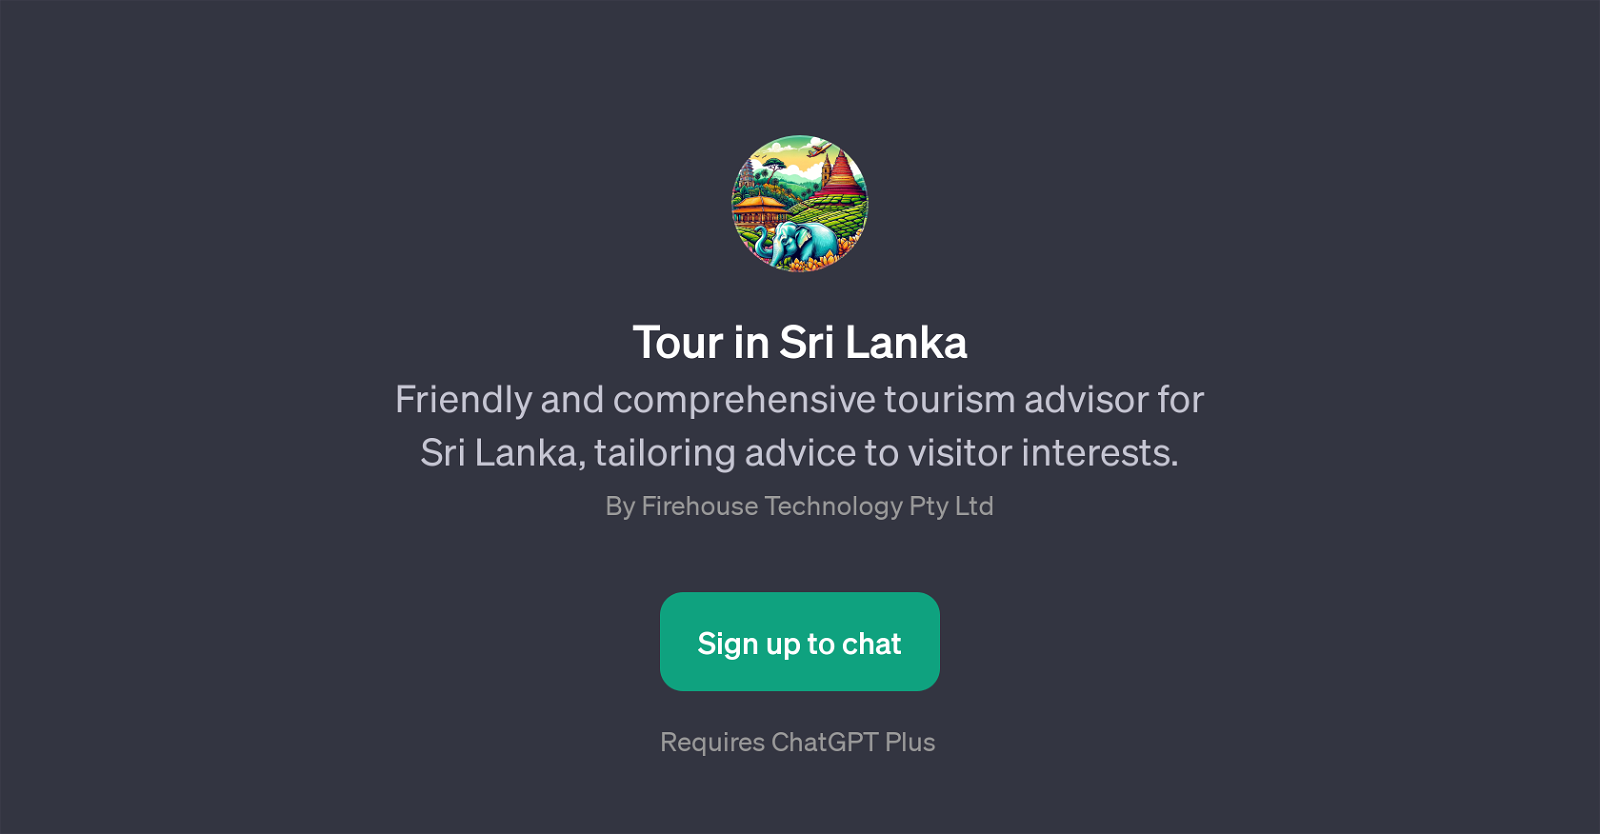 Tour in Sri Lanka website